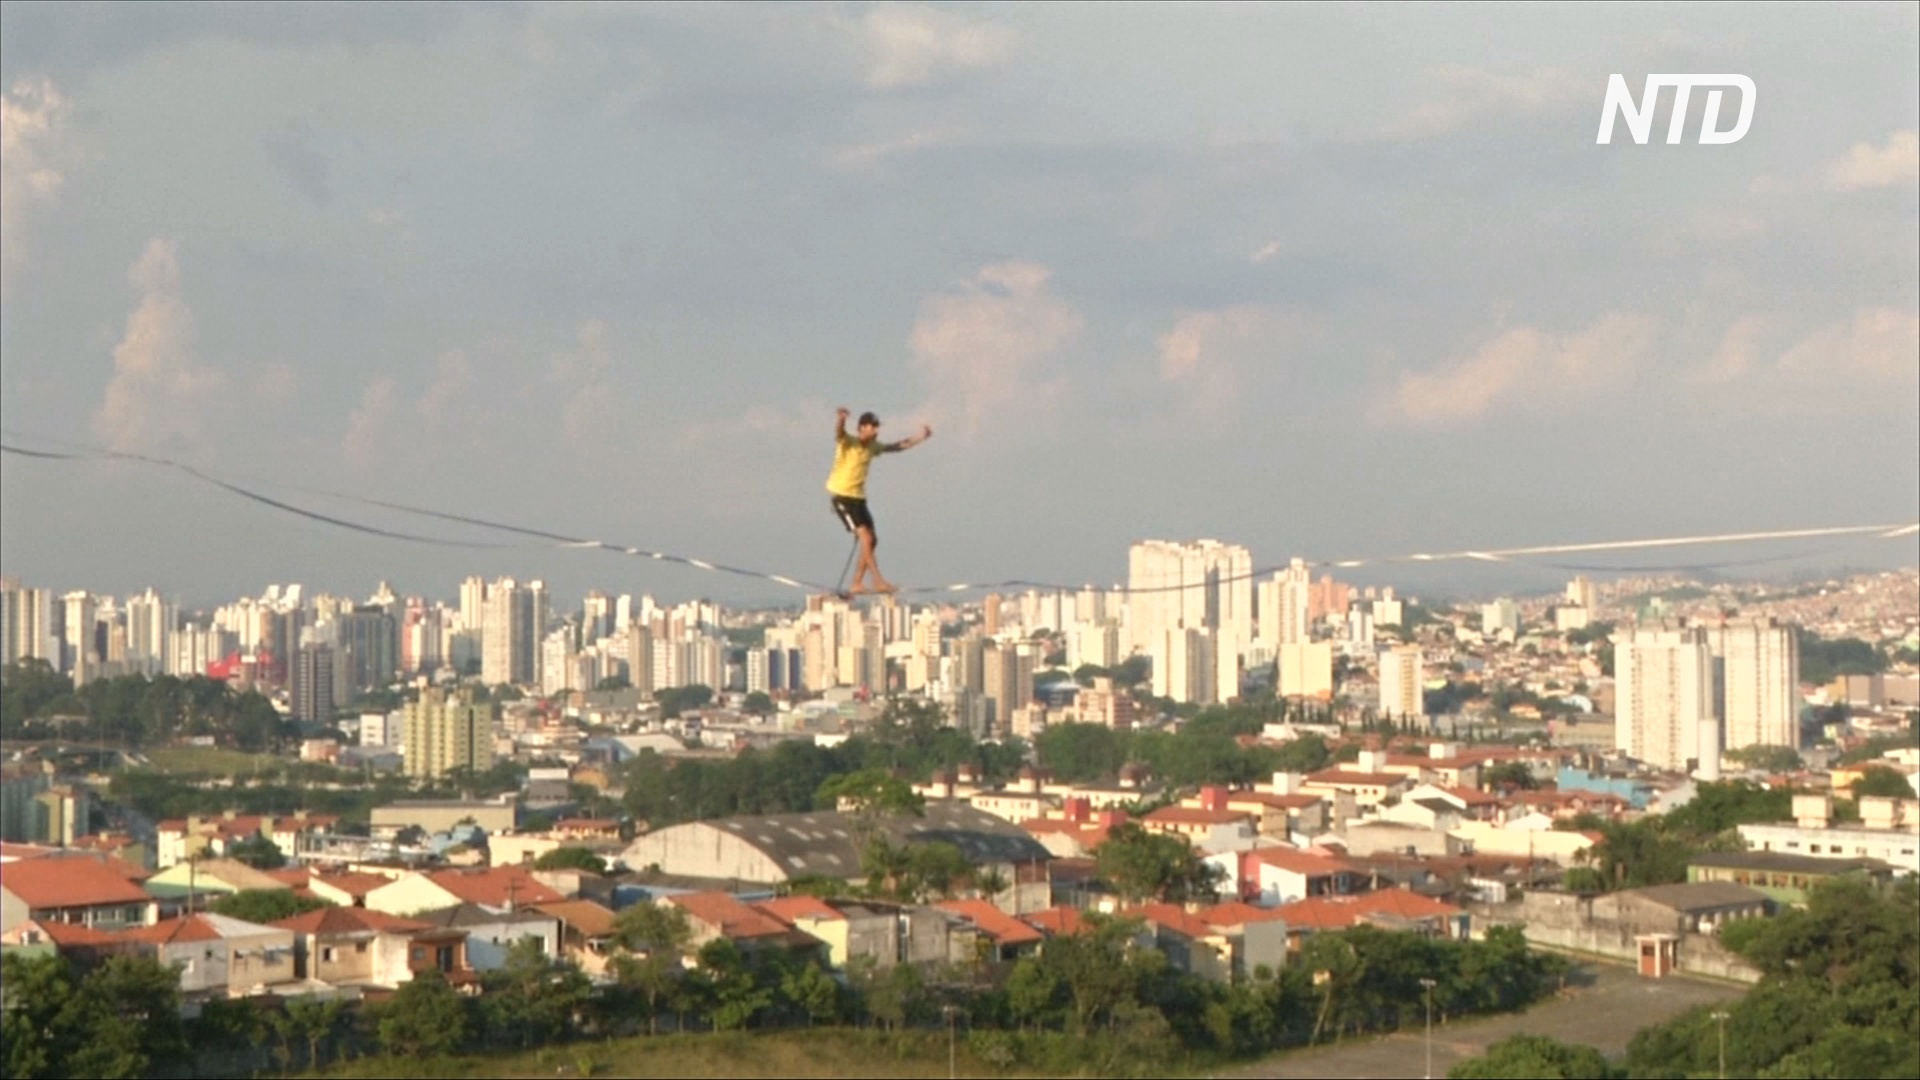 Экстремалы в городе: в Сан-Паулу эквилибристы облюбовали заброшенную стройку